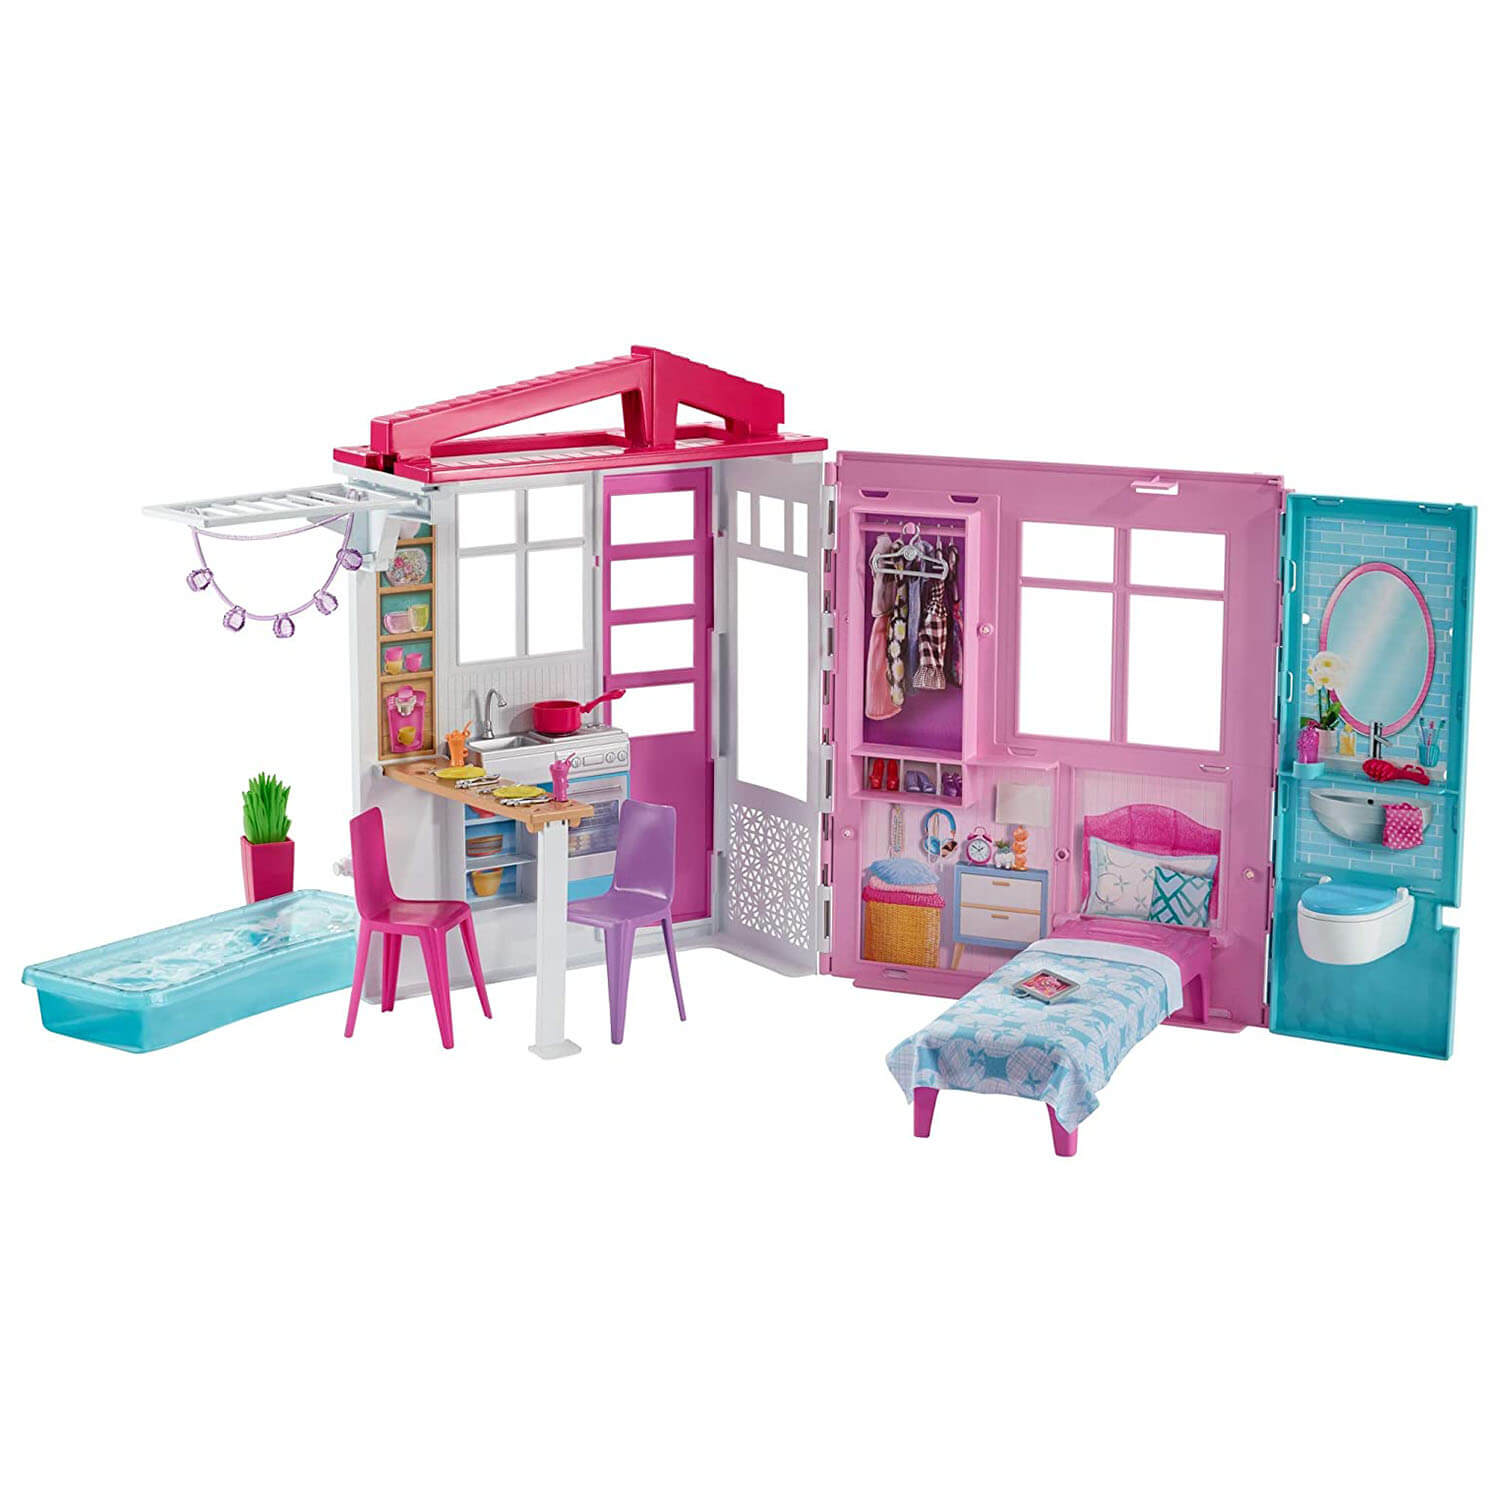 Barbie Close & Go Dollhouse